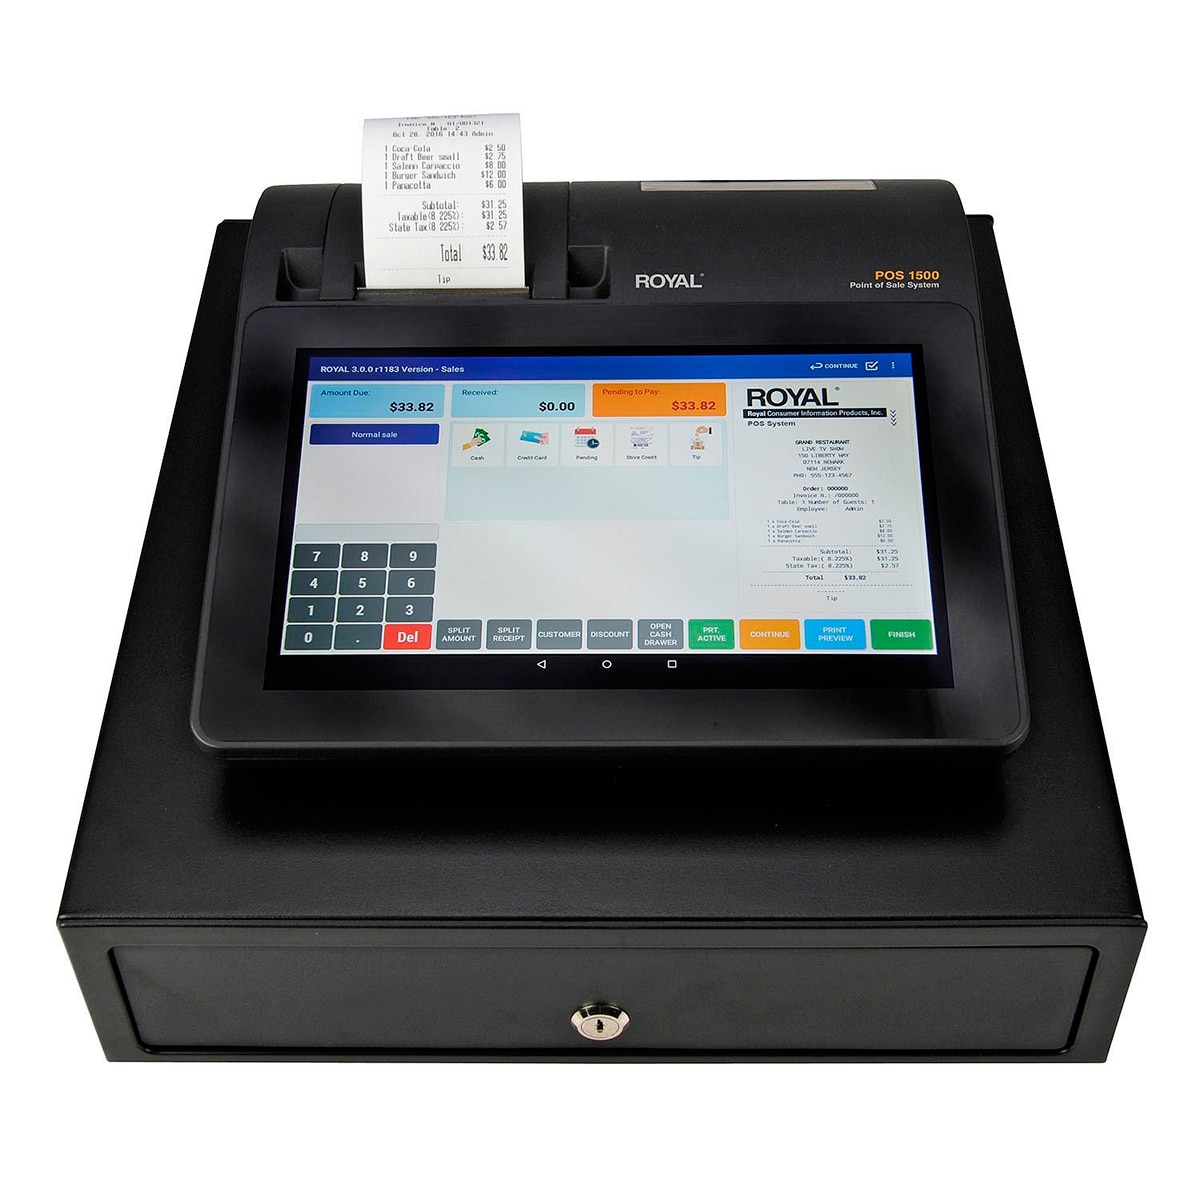 Royal caja registradora punto de venta POS1500 con pantalla táctil de 10"